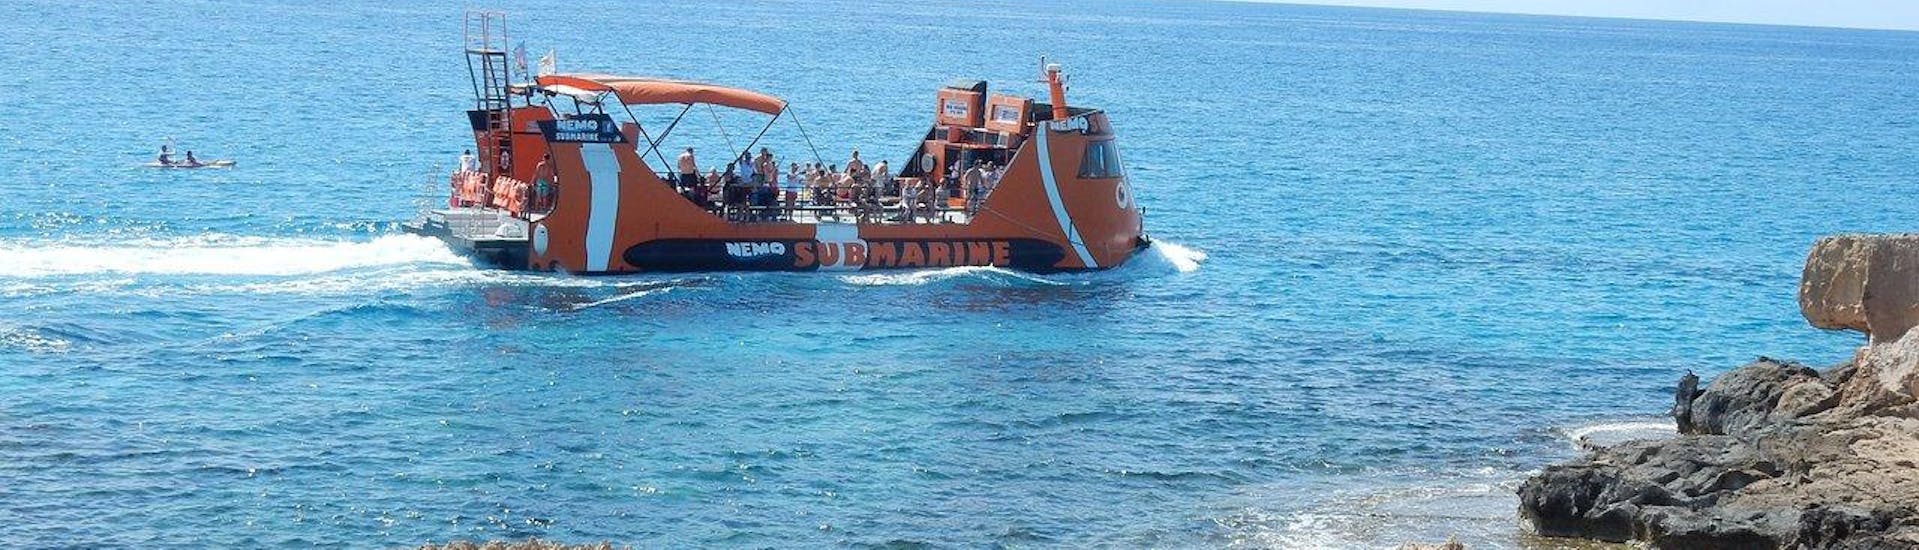 El semi-submarino Nemo navegando la costa de Ayia Napa.